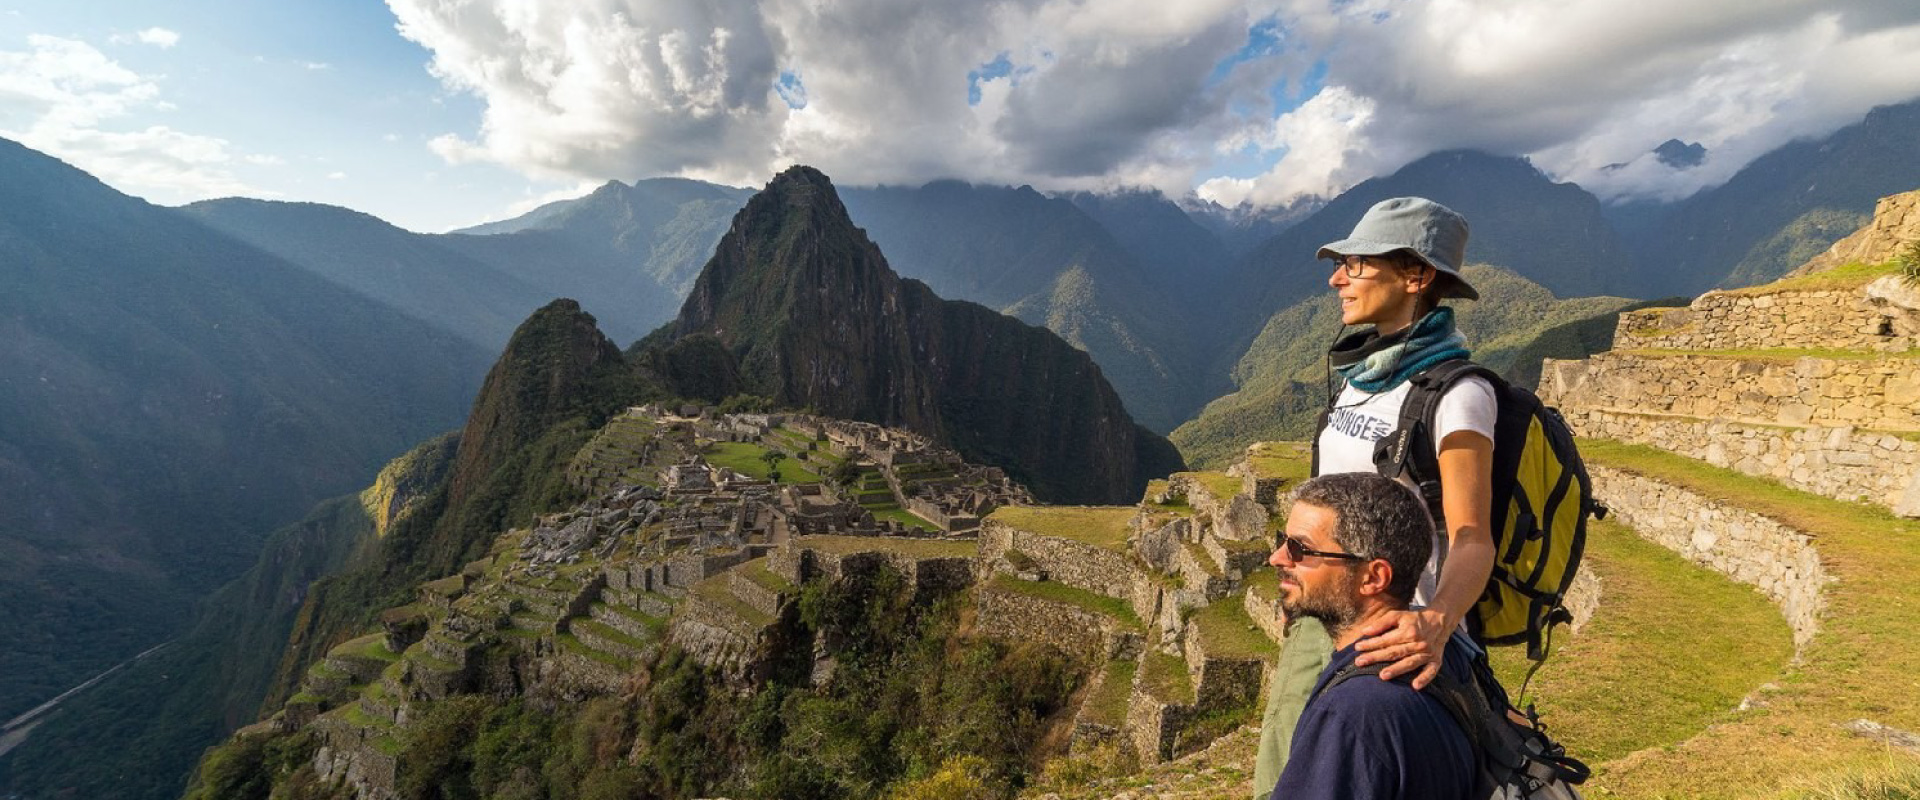 machu picchu hiking tour in Peru